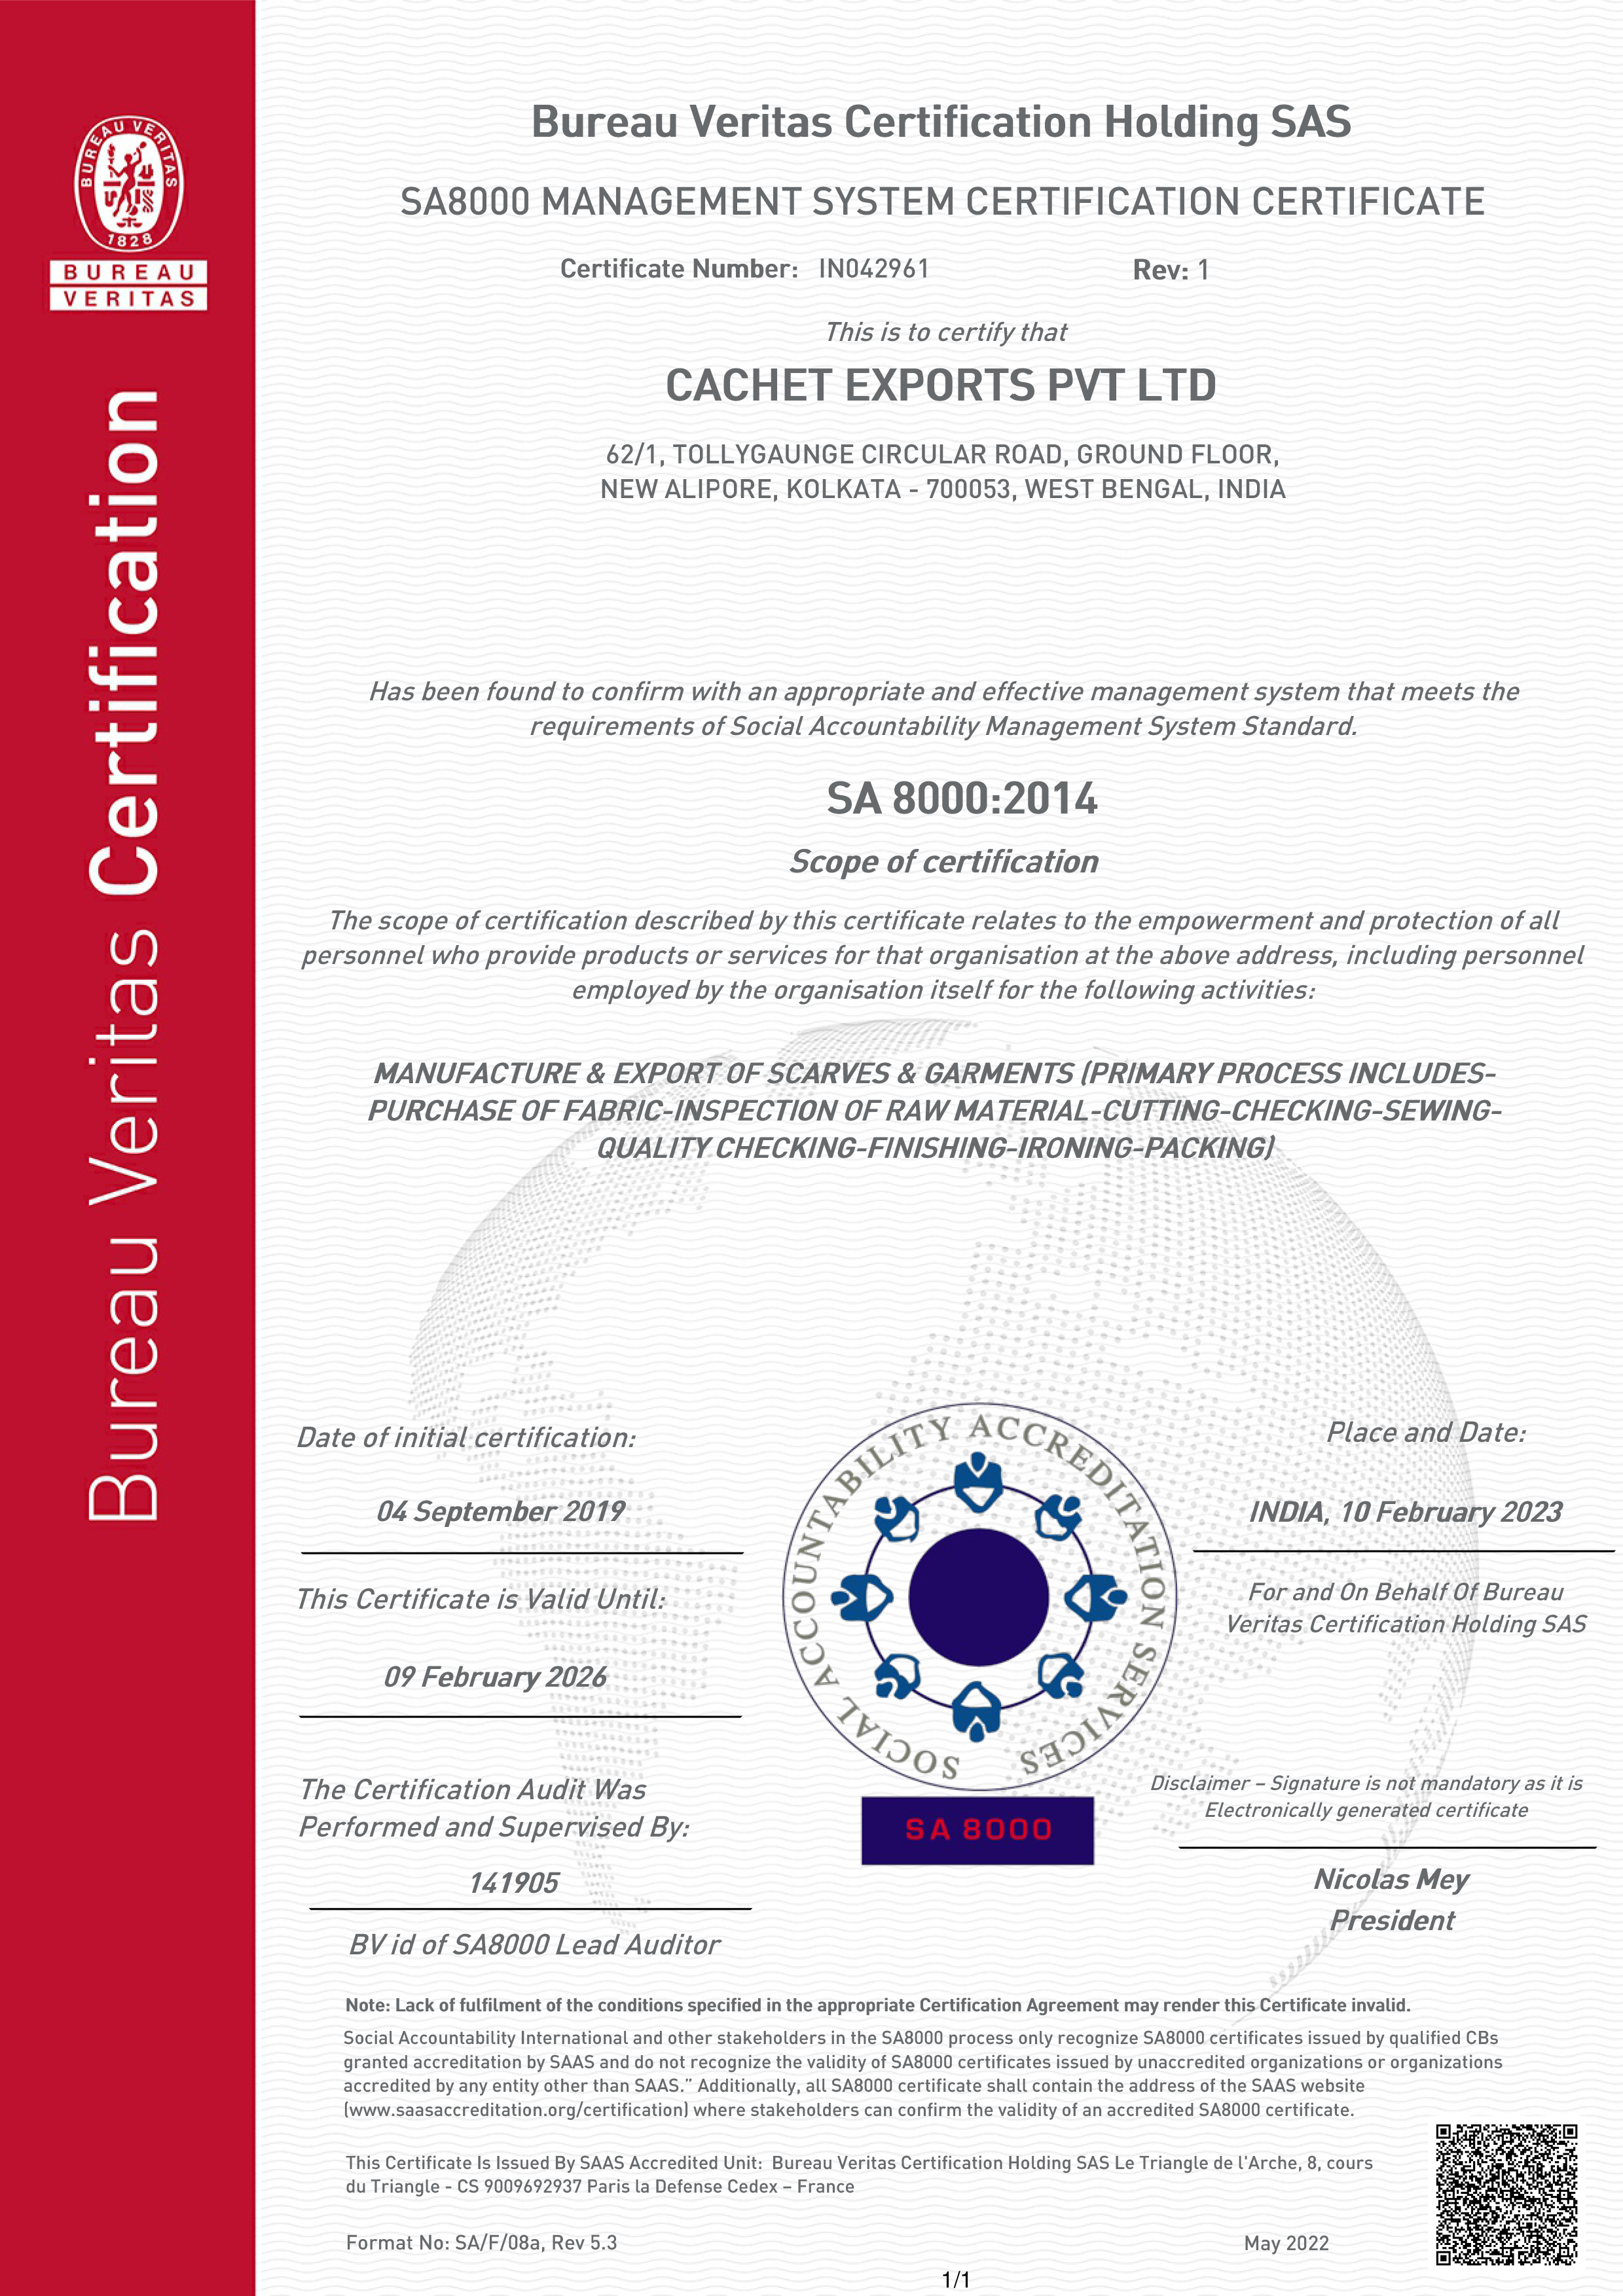 Cachet Exports PVT. LTD.